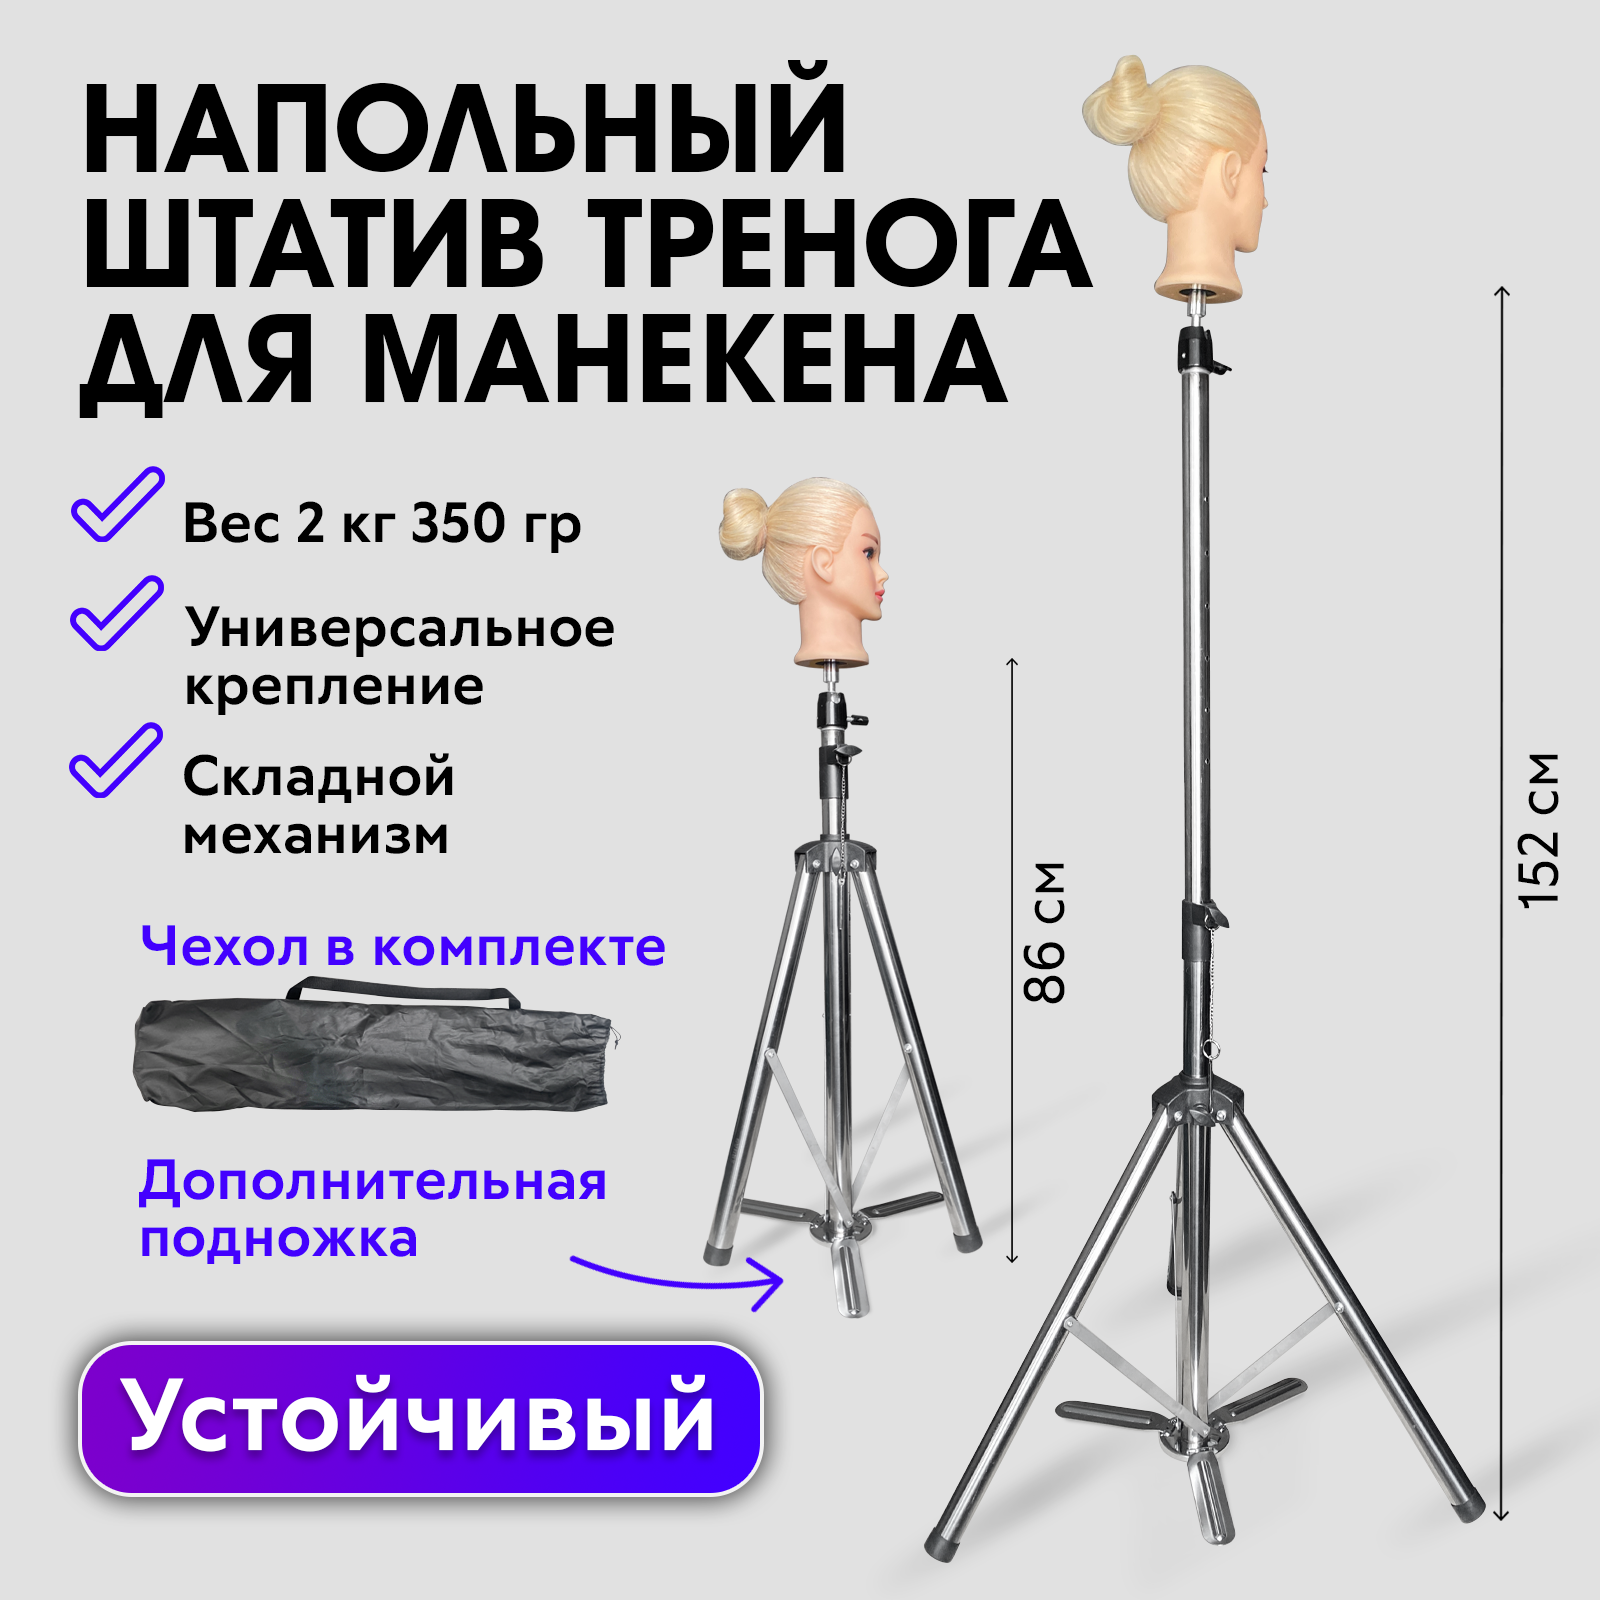 Напольный штатив для учебной головы манекена Charites стойка для дрели p i t p0010002 крепление d 40 мм регулировка угла и глубины сверления